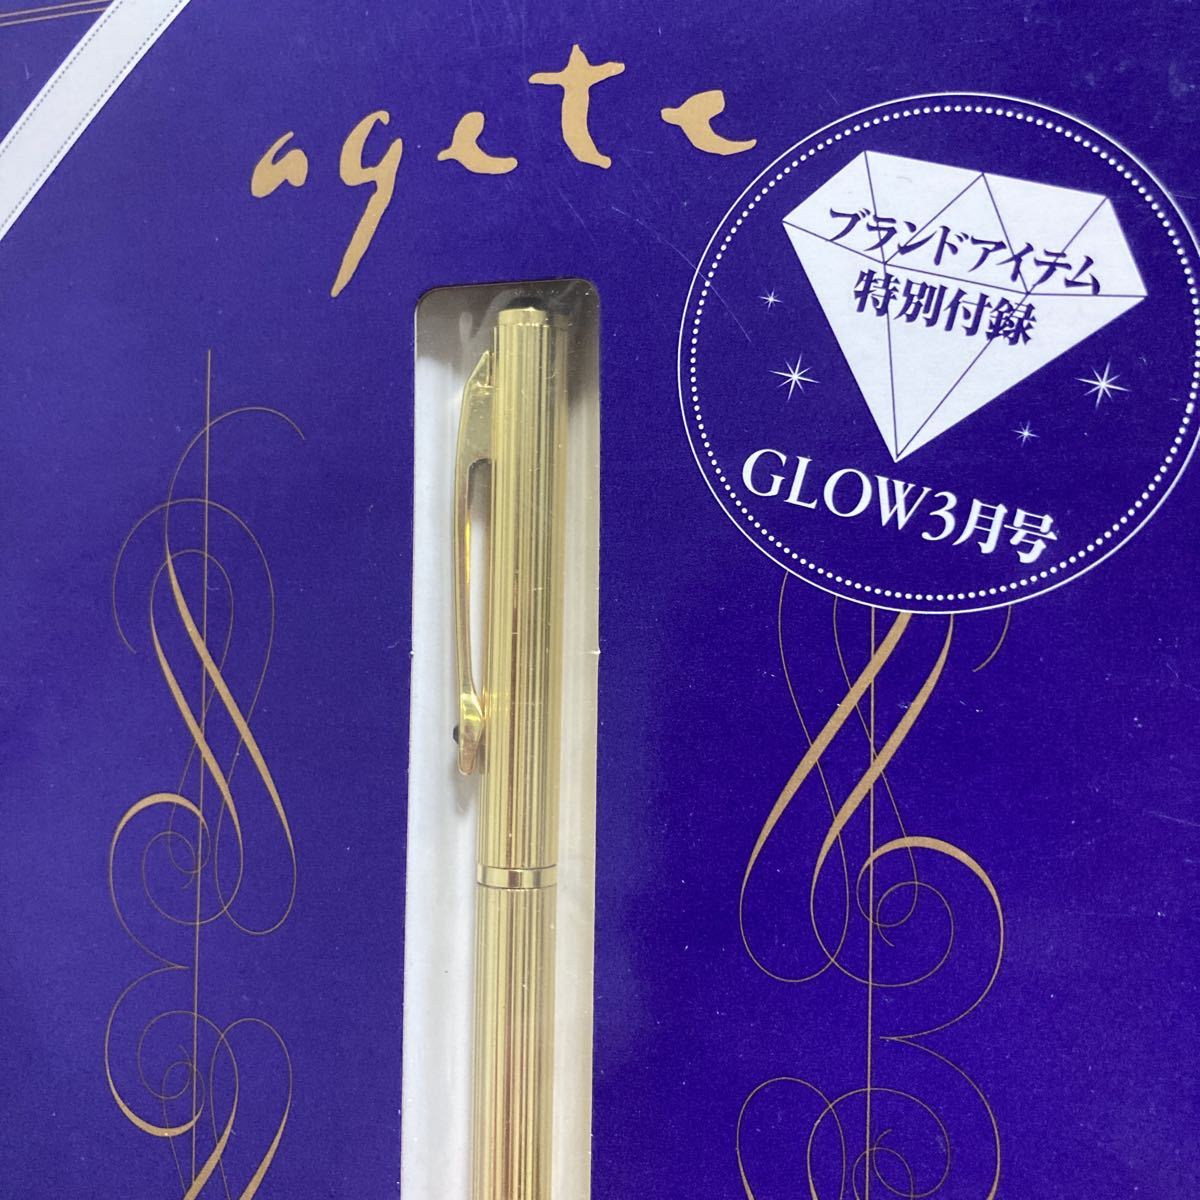  редкость! быстрое решение новый товар Agete biju- имеется шариковая ручка GLOW 2014 год 3 месяц дополнение agete шариковая ручка Gold лиловый biju-